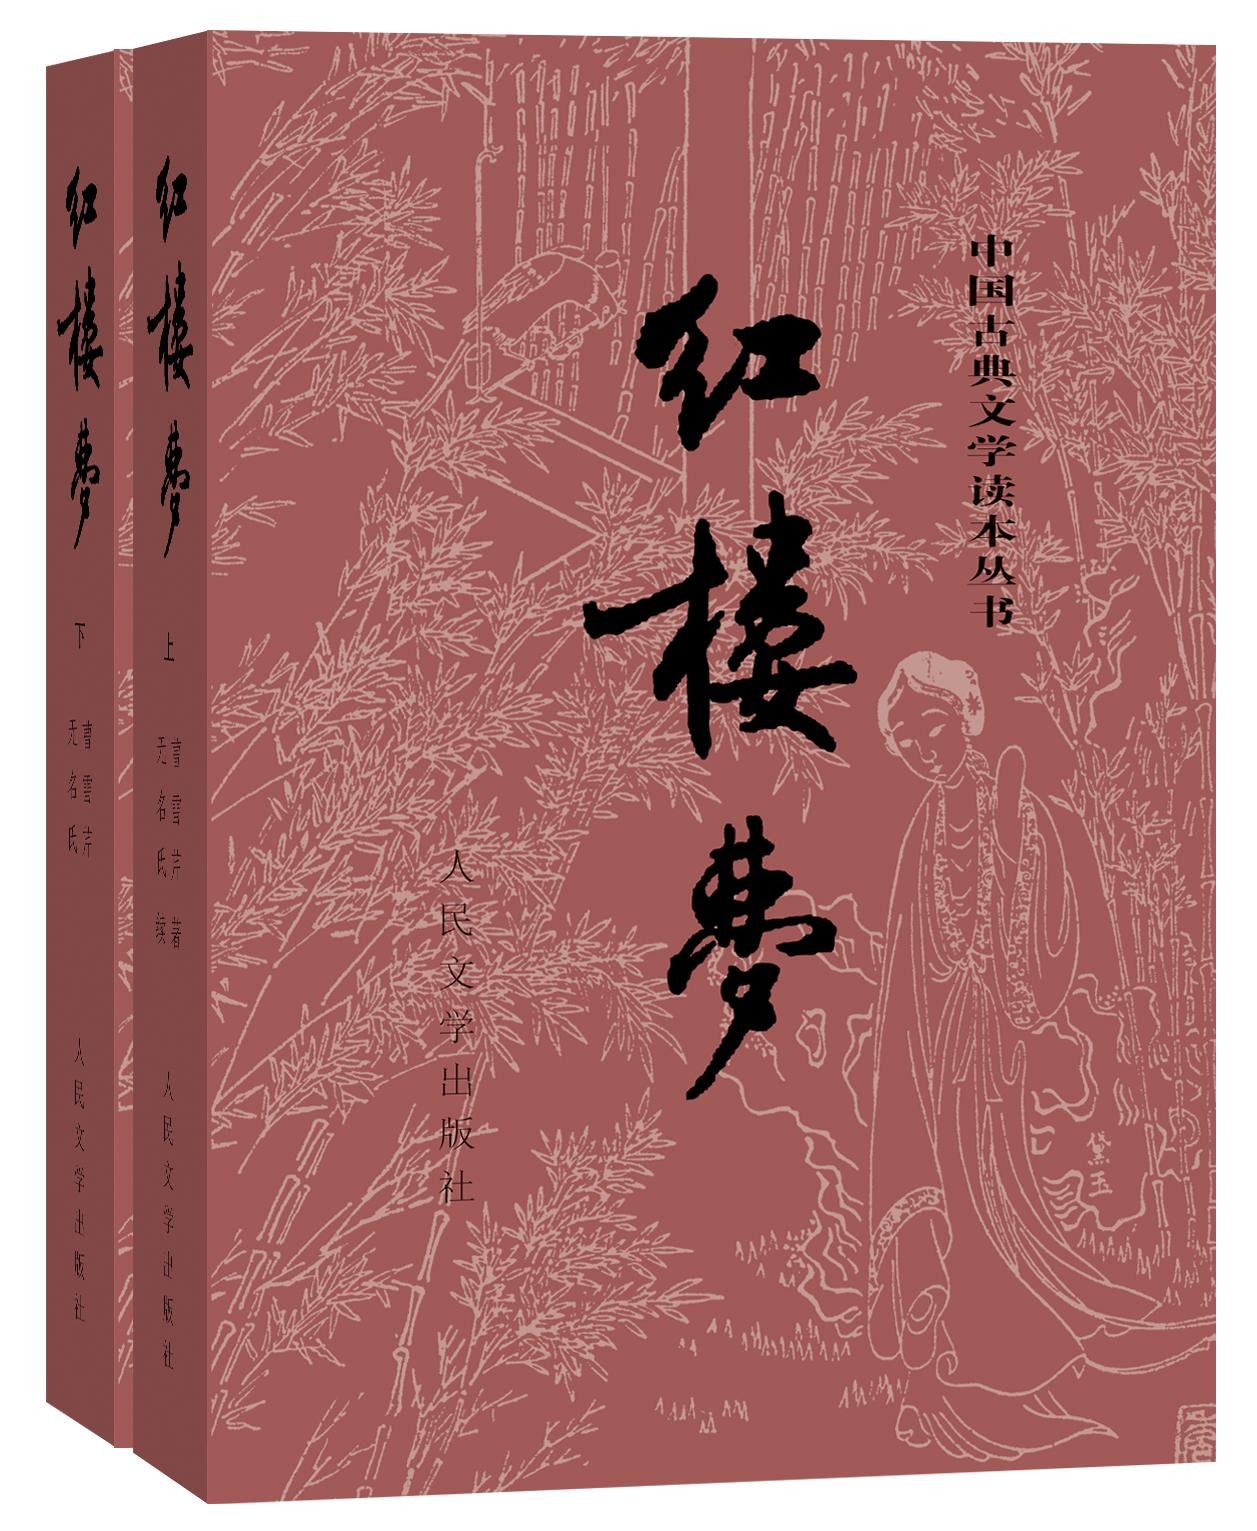 中国古典文学读本丛书--红楼梦(套装共2册)